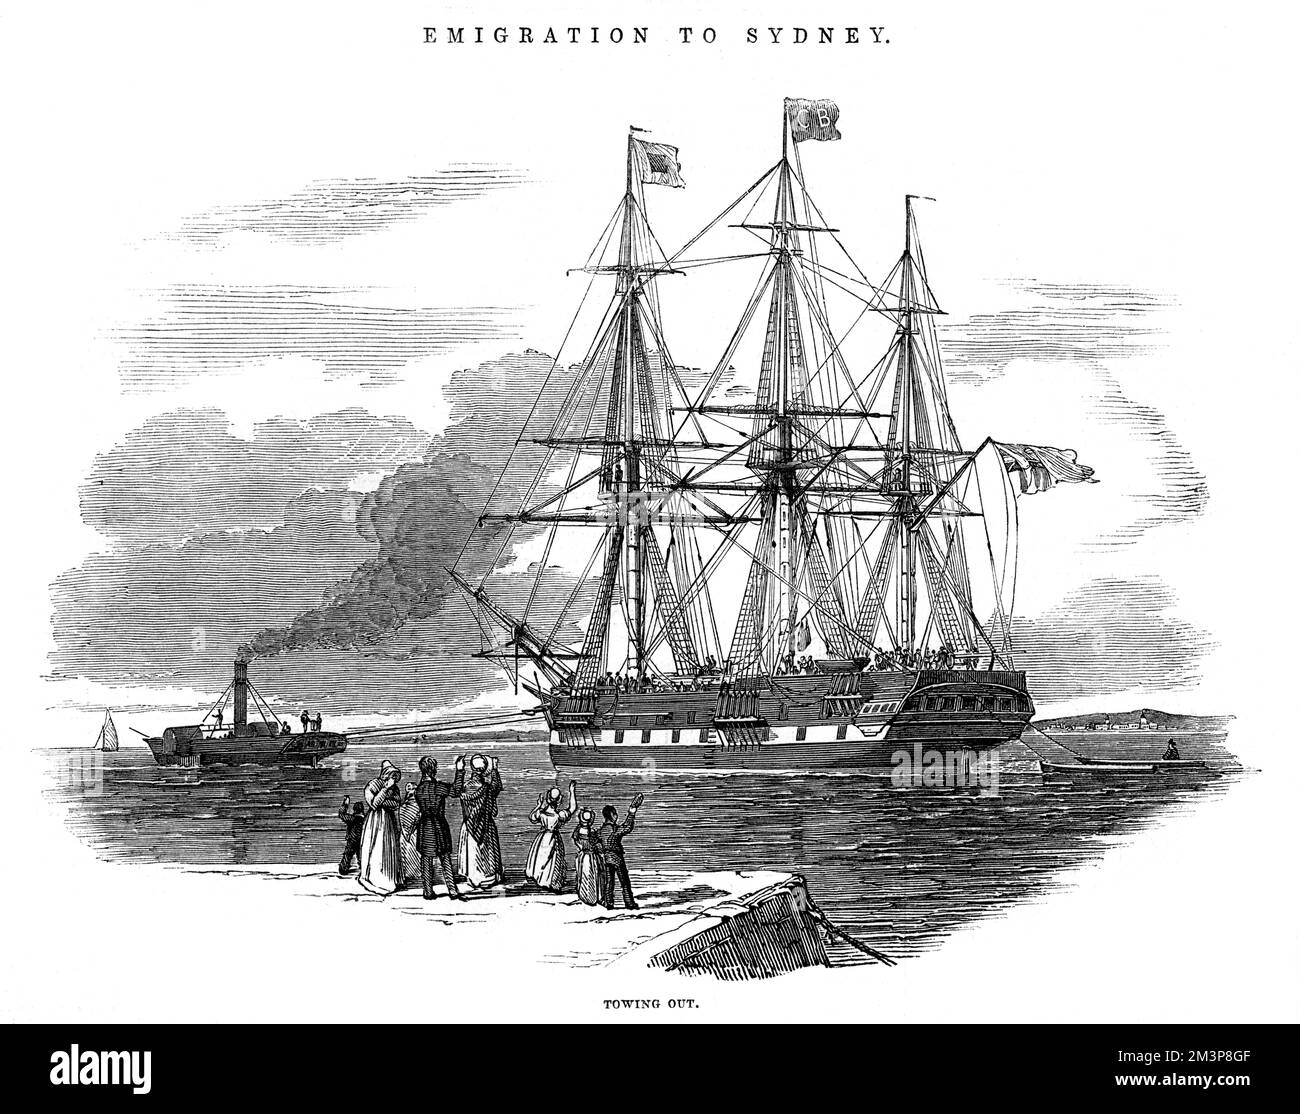 Das Emigrantenschiff St. Vincent, auf dem Weg nach Sydney, Australien, wird abgeschleppt. Das Schiff verließ Deptford, Süd-London, vorbereitete die Fahrt nach Plymouth, dann Cork in Irland, bevor es nach Australien ging. Datum: 1844 Stockfoto